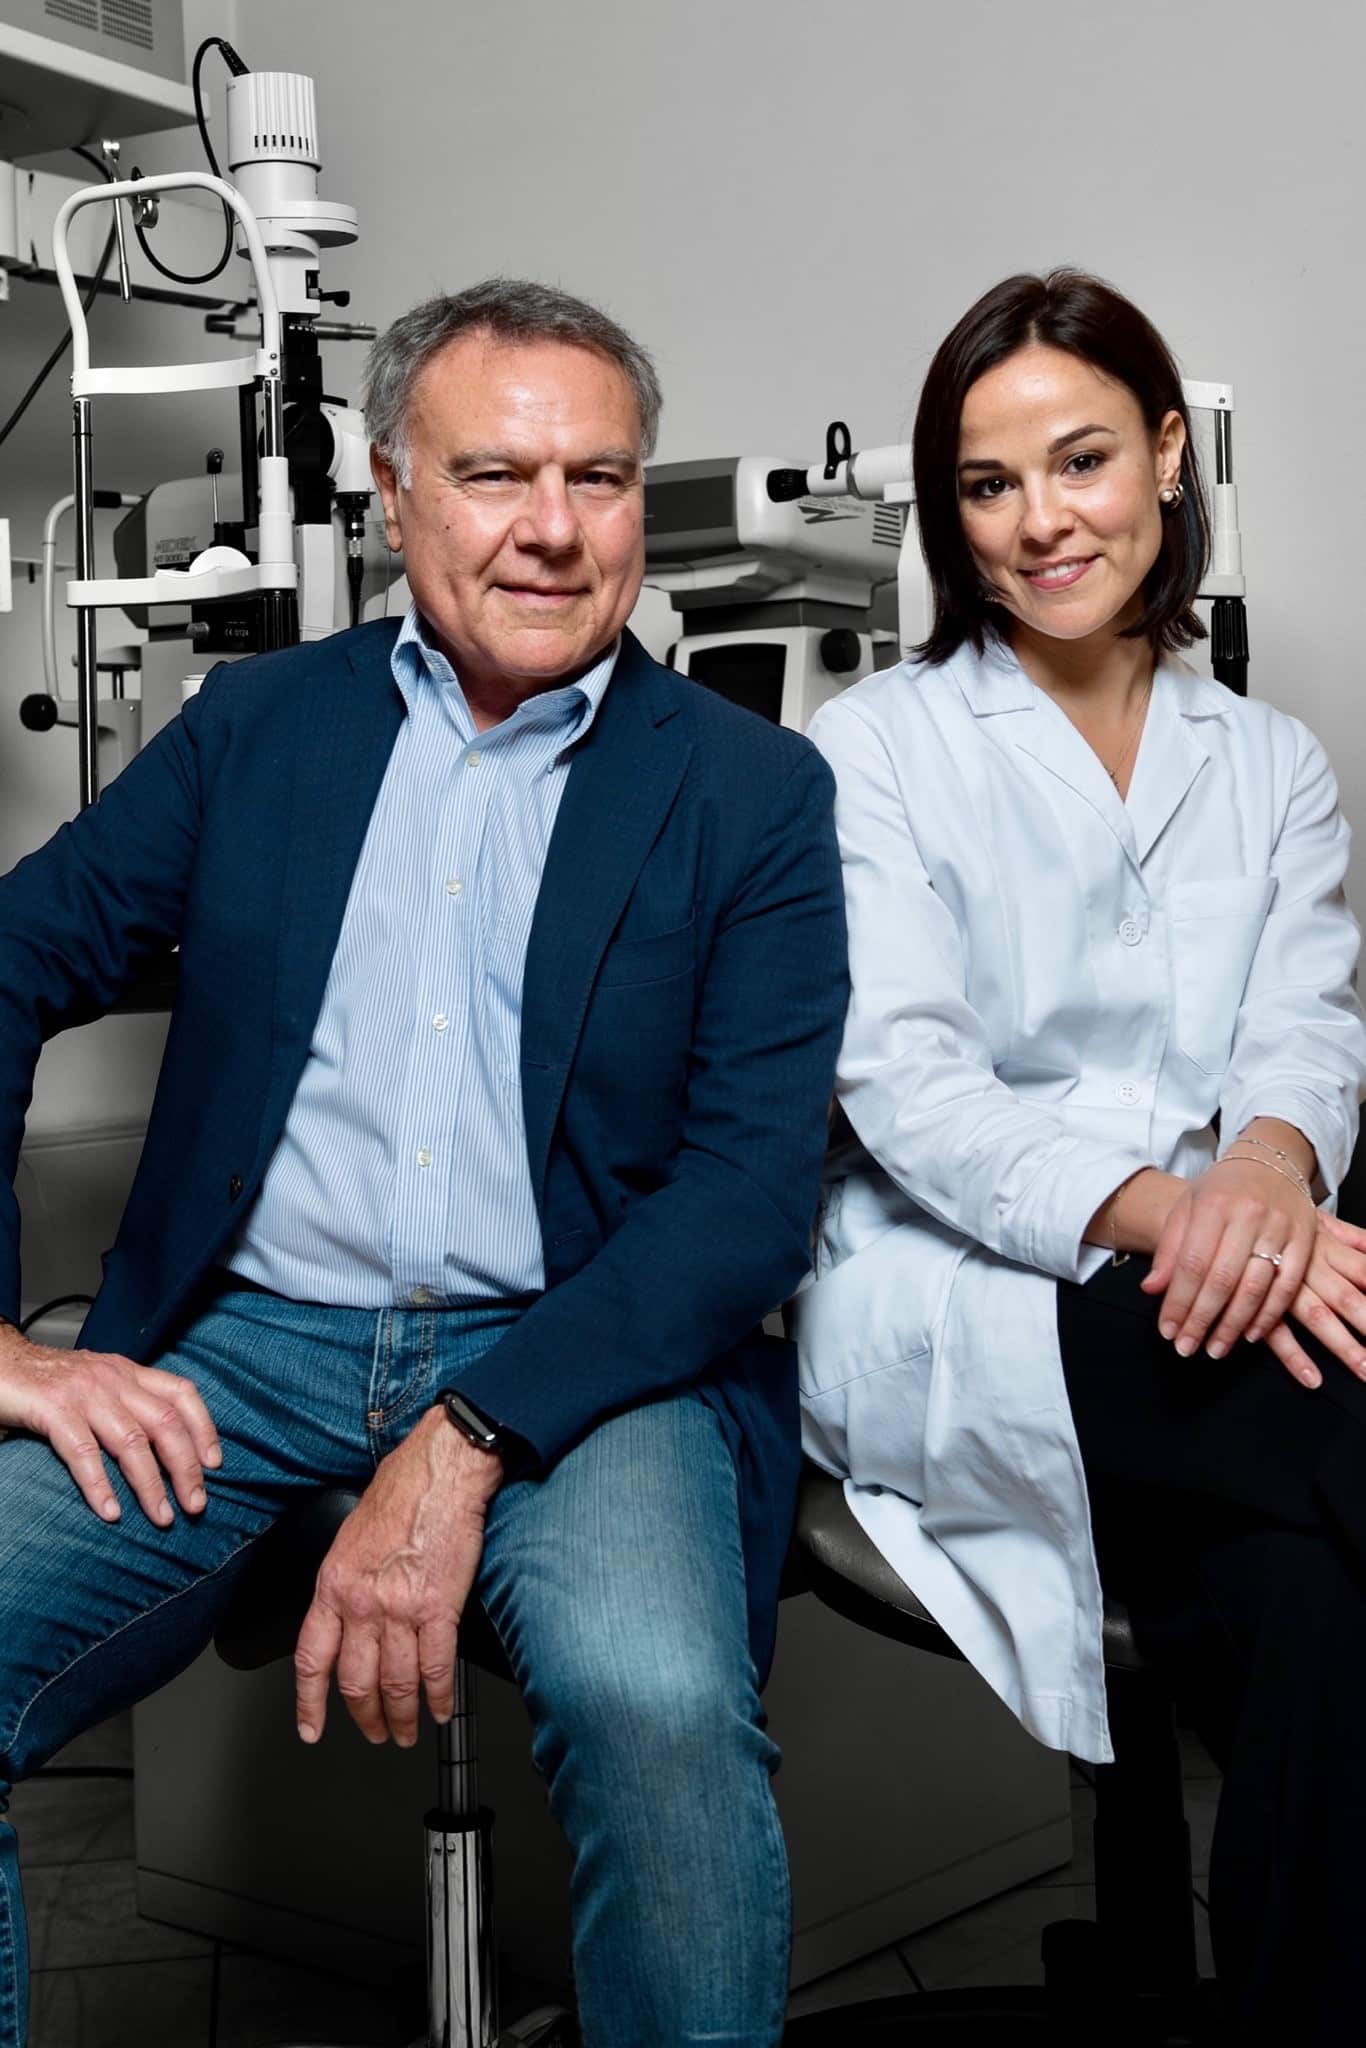 Prof. Stefano Piermarocchi e sua figlia, la Dott.ssa Rita Piermarocchi, seduti insieme in uno studio oftalmologico.